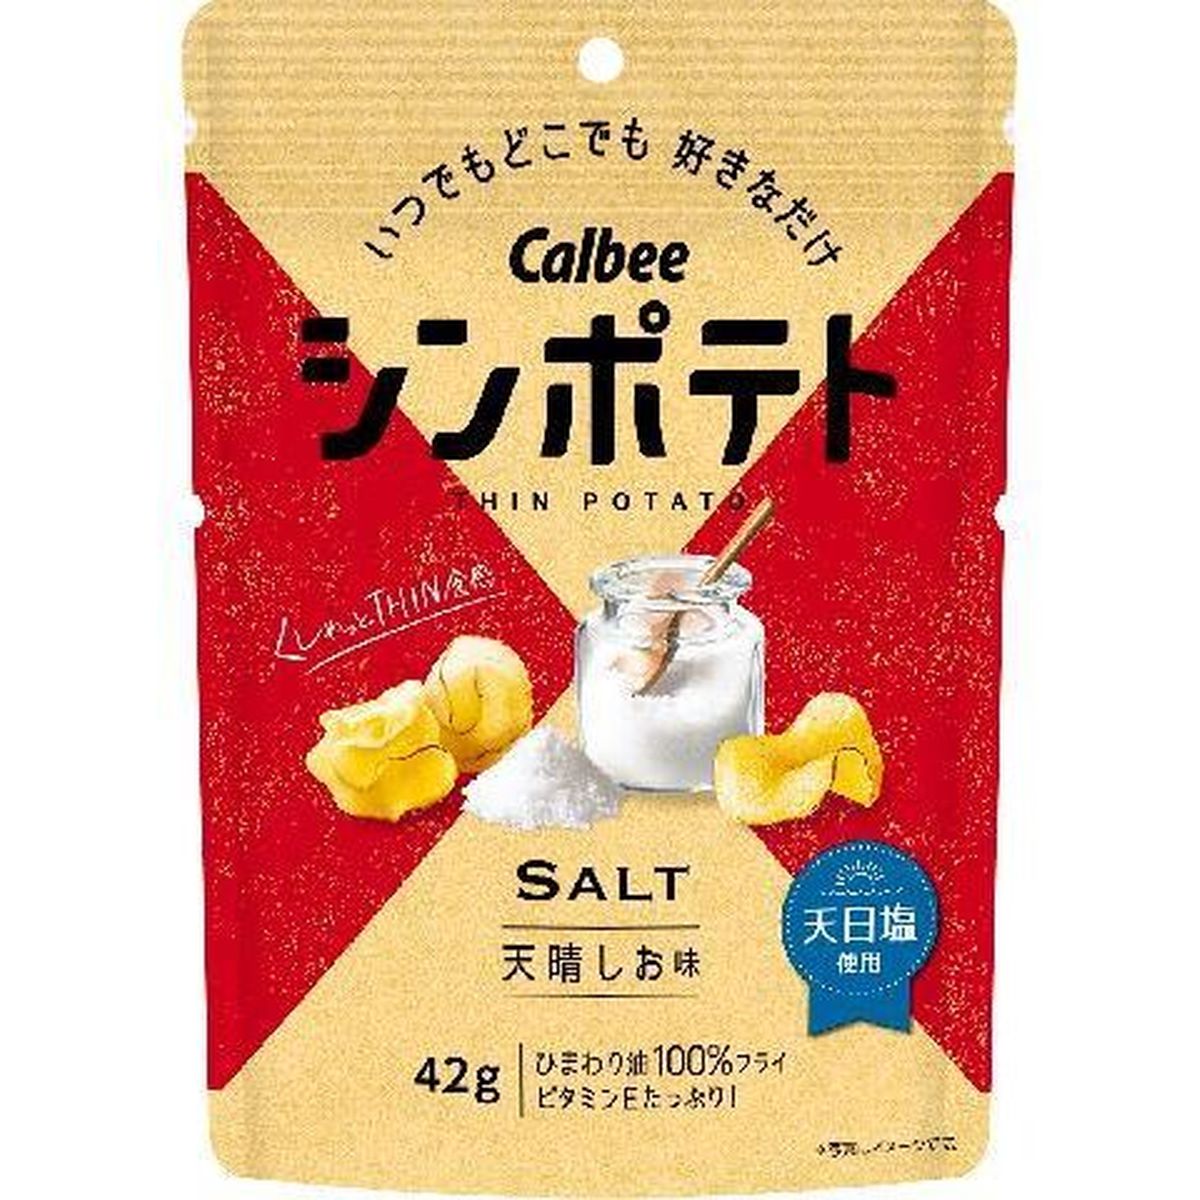 【12個入リ】カルビー シンポテト天晴シオ味 42g